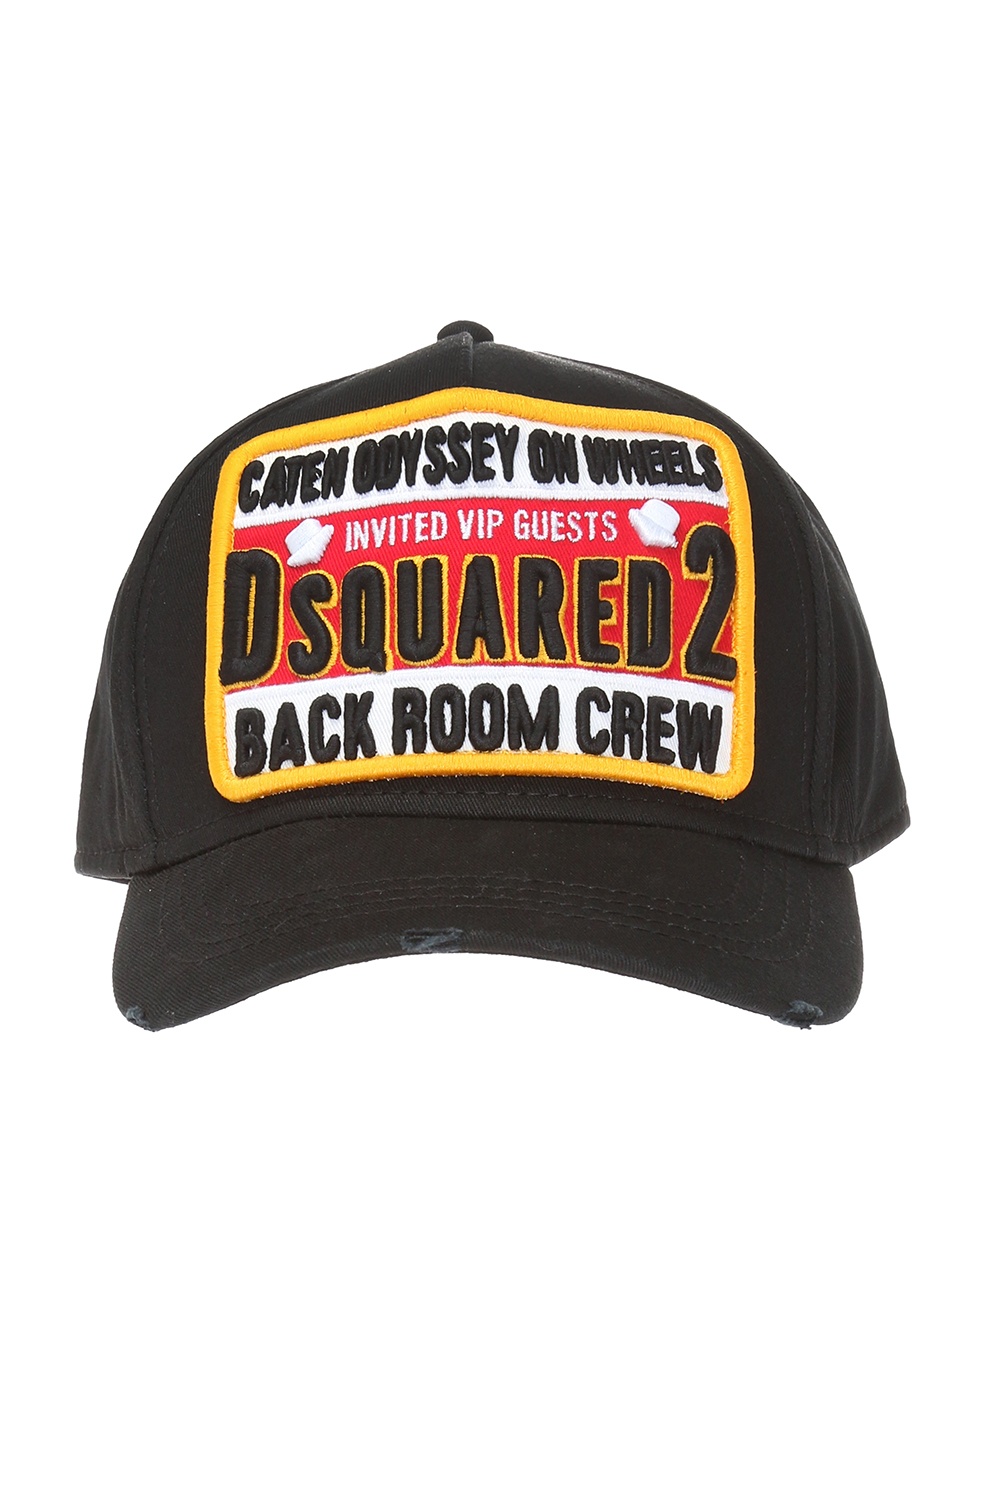 dsquared2 backroom crew cap